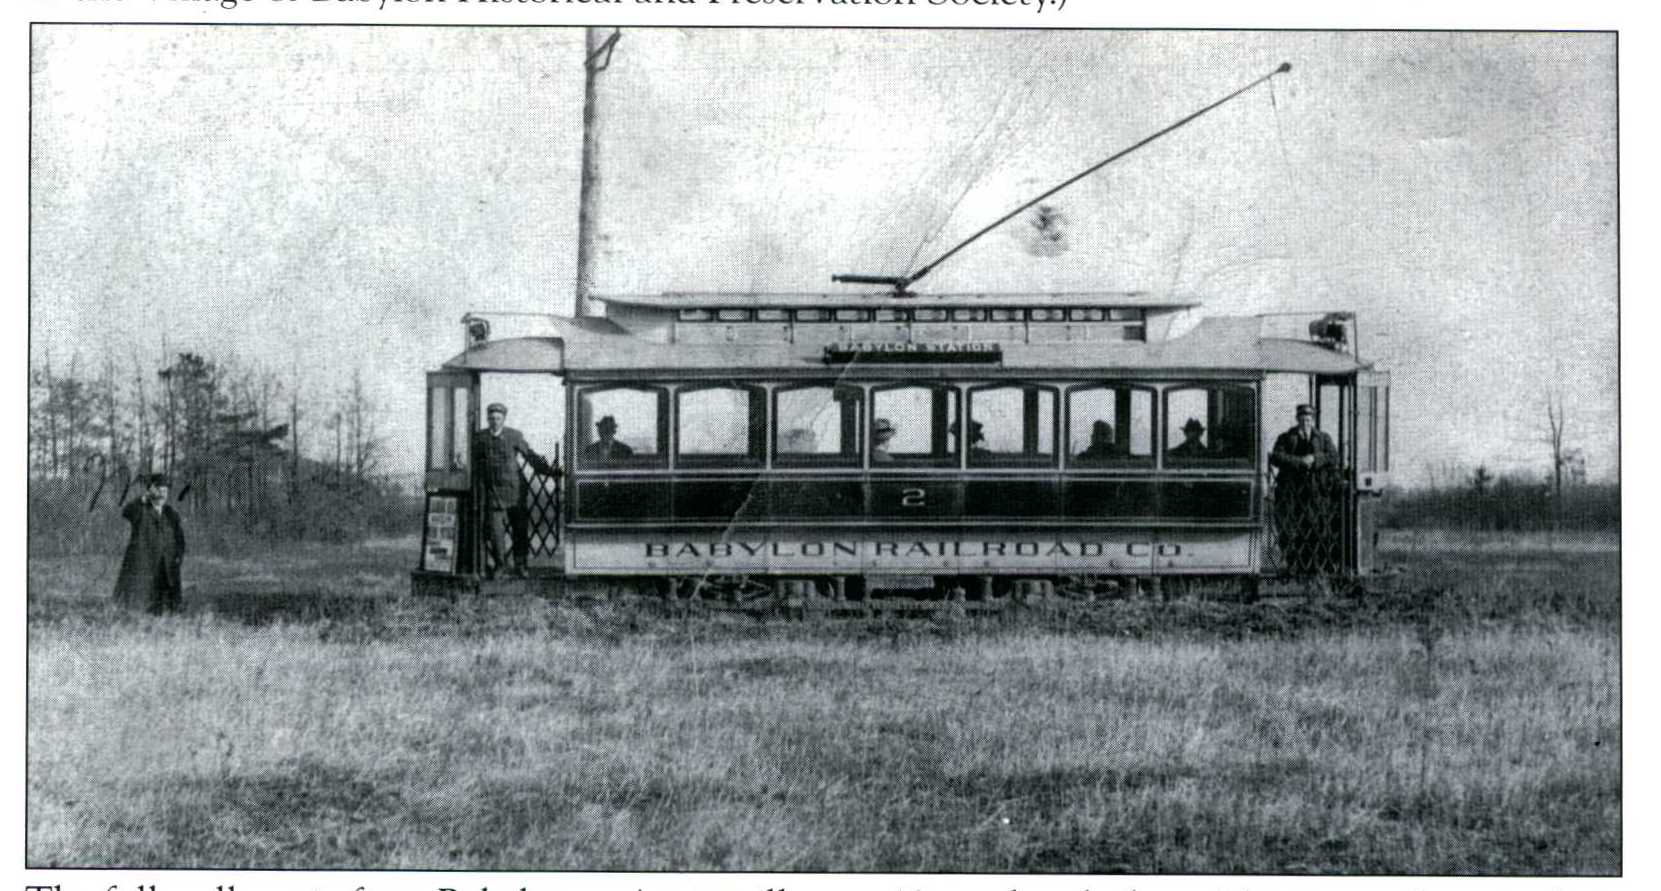 Babylon Railroad (Trolley)